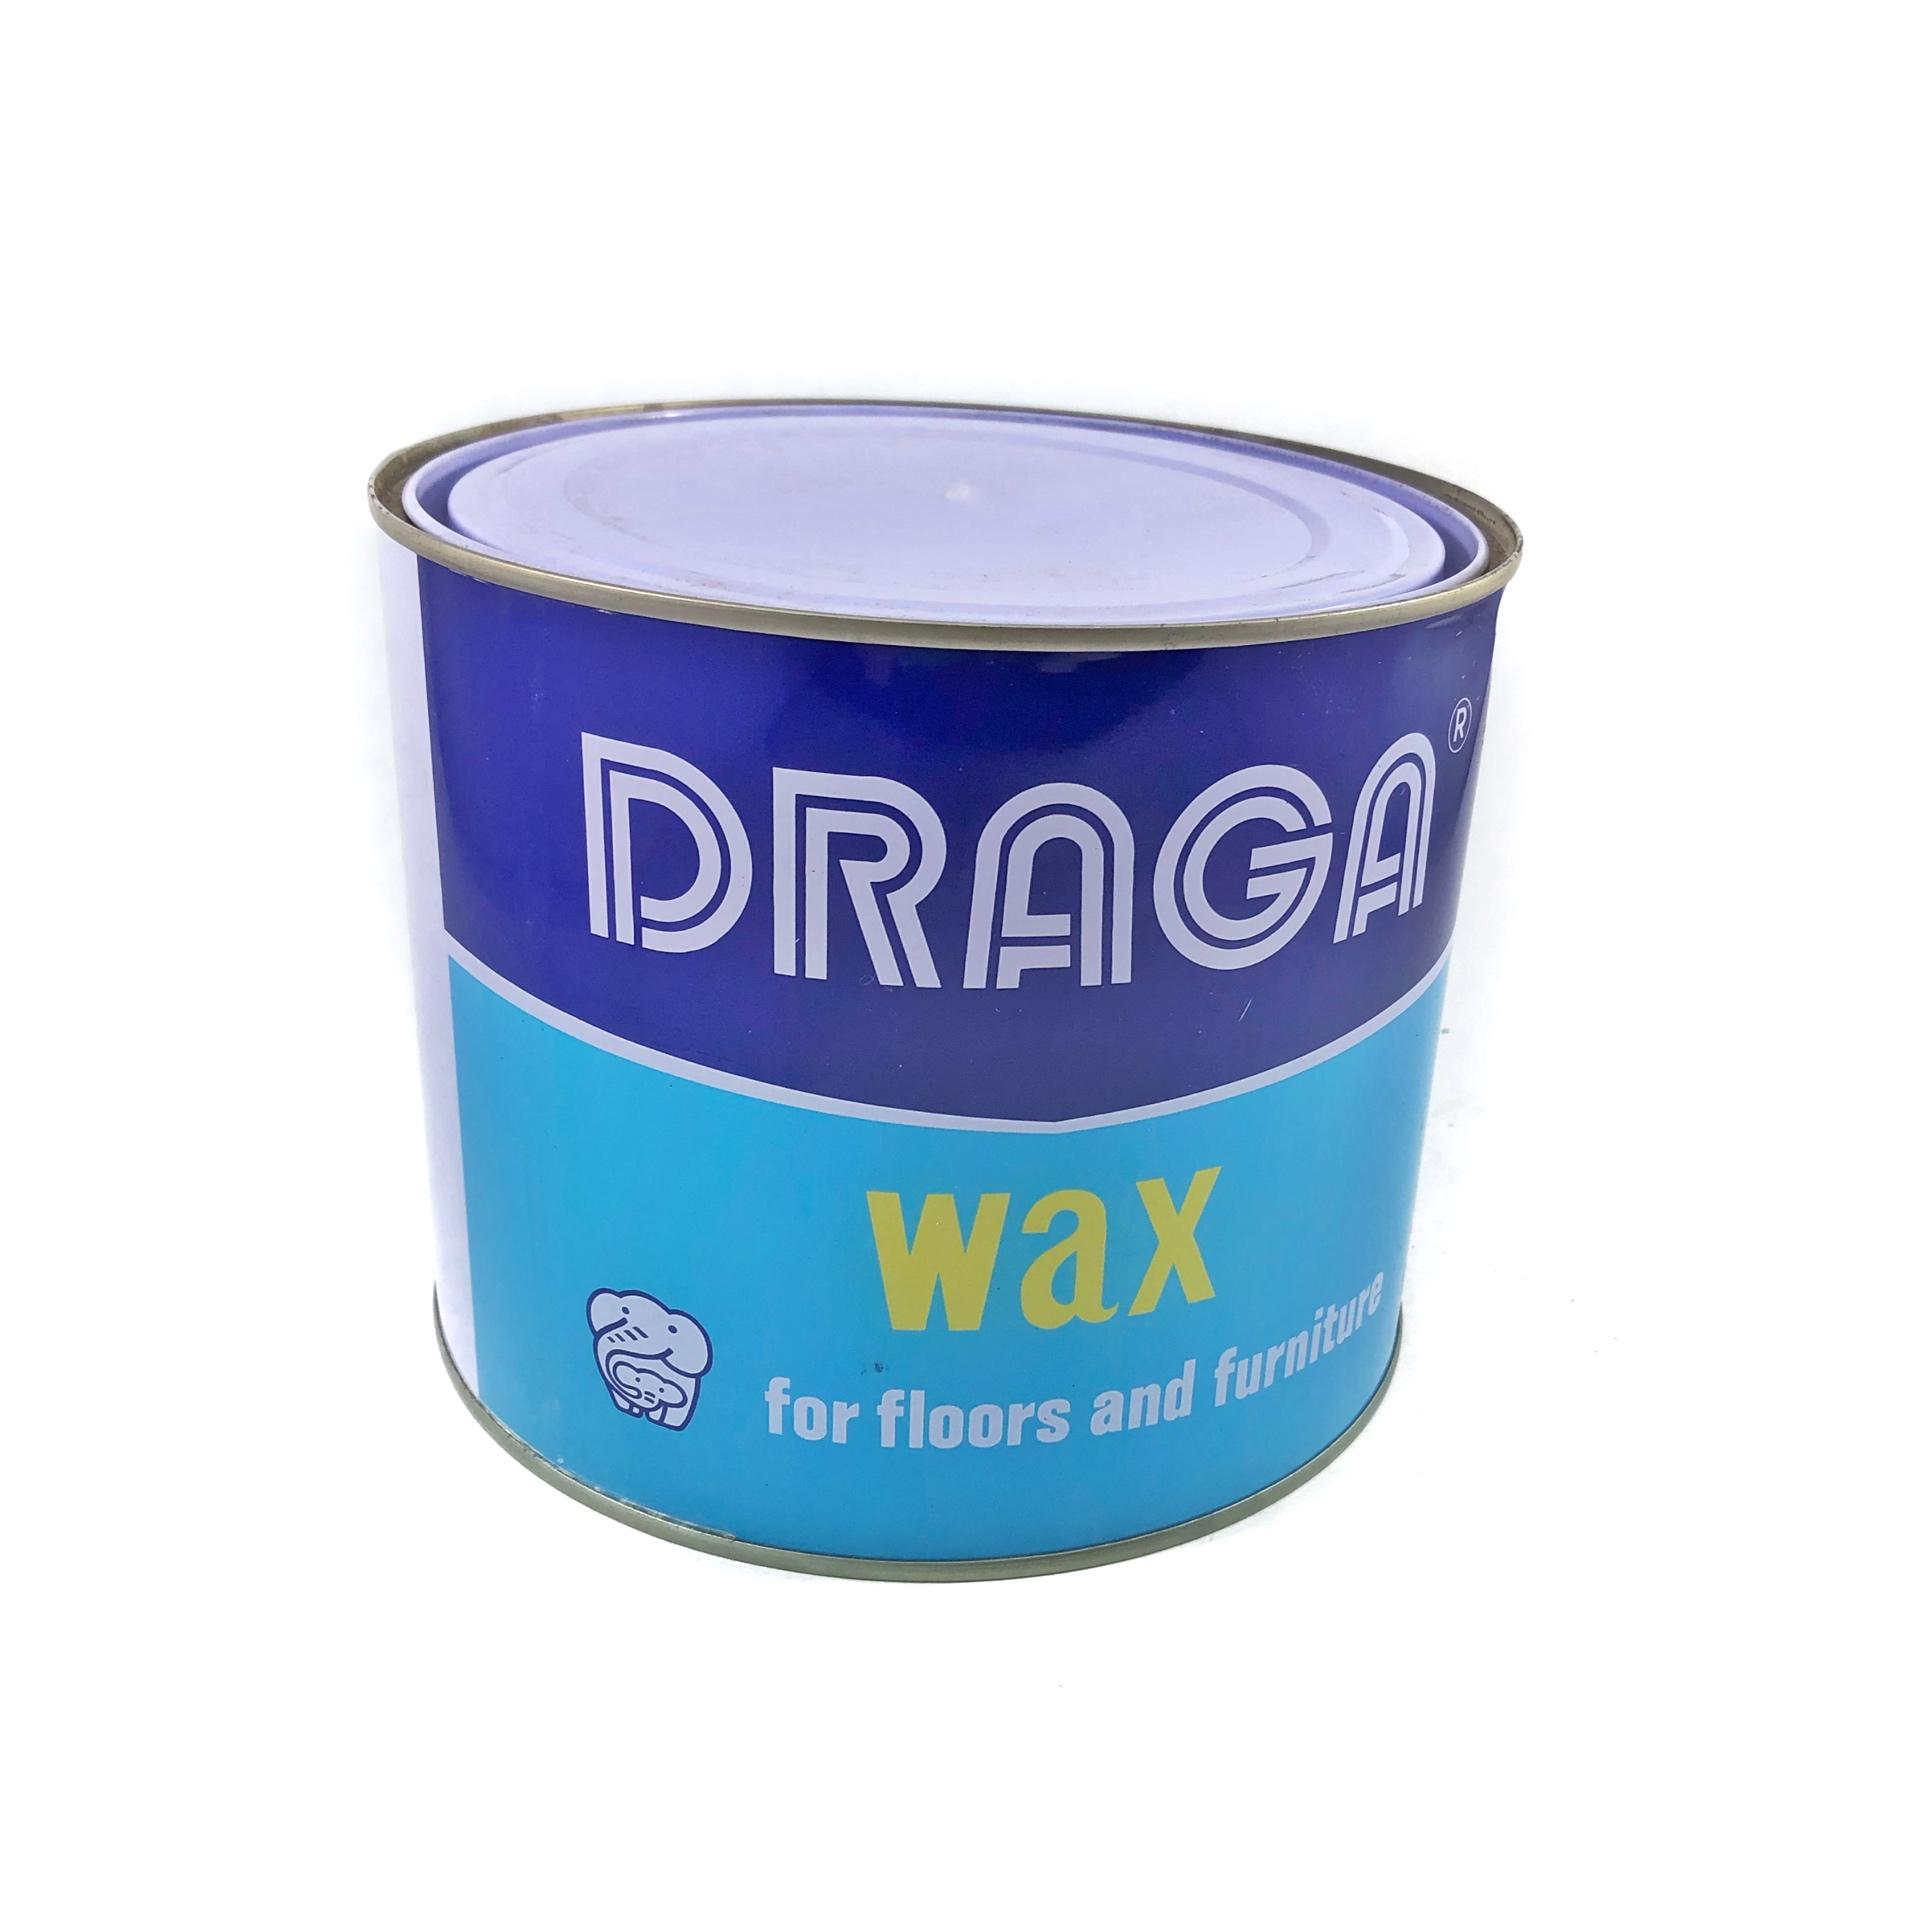 DRAGA WAX แว๊ก แว๊กขัดพื้น ขัดพื้นไม้ ให้เงางาม ขี้ผึ้งขัดพื้น Wax ขัดเฟอร์นิเจอร์ แว๊กซ์ขัดพื้นไม้ ขนาด 2.27 กก. หรือ5 ปอนด์